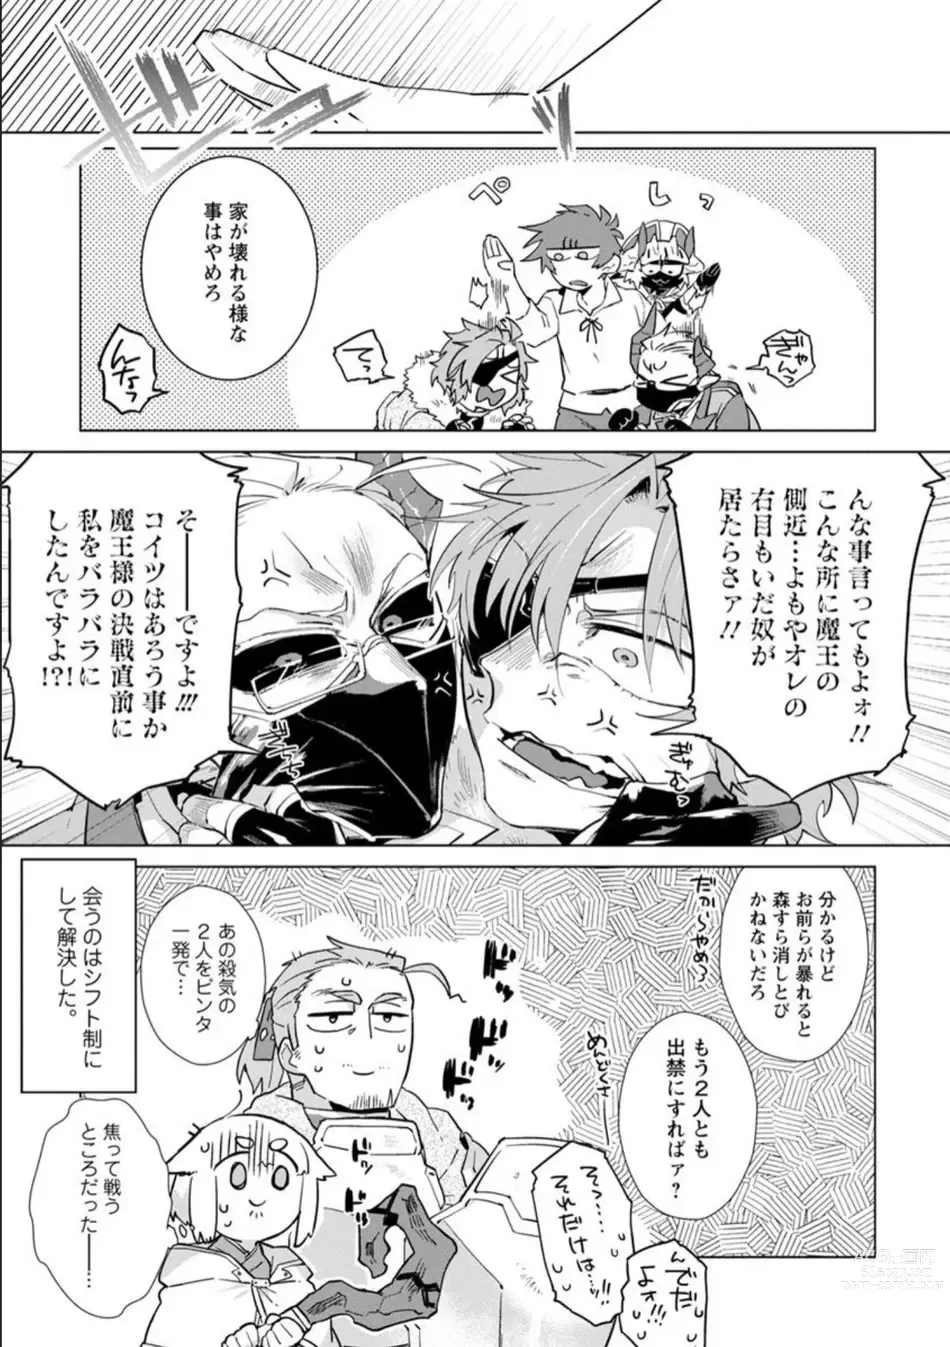 Page 198 of manga Maou-sama wa Yuusha no Ken de Midaretai